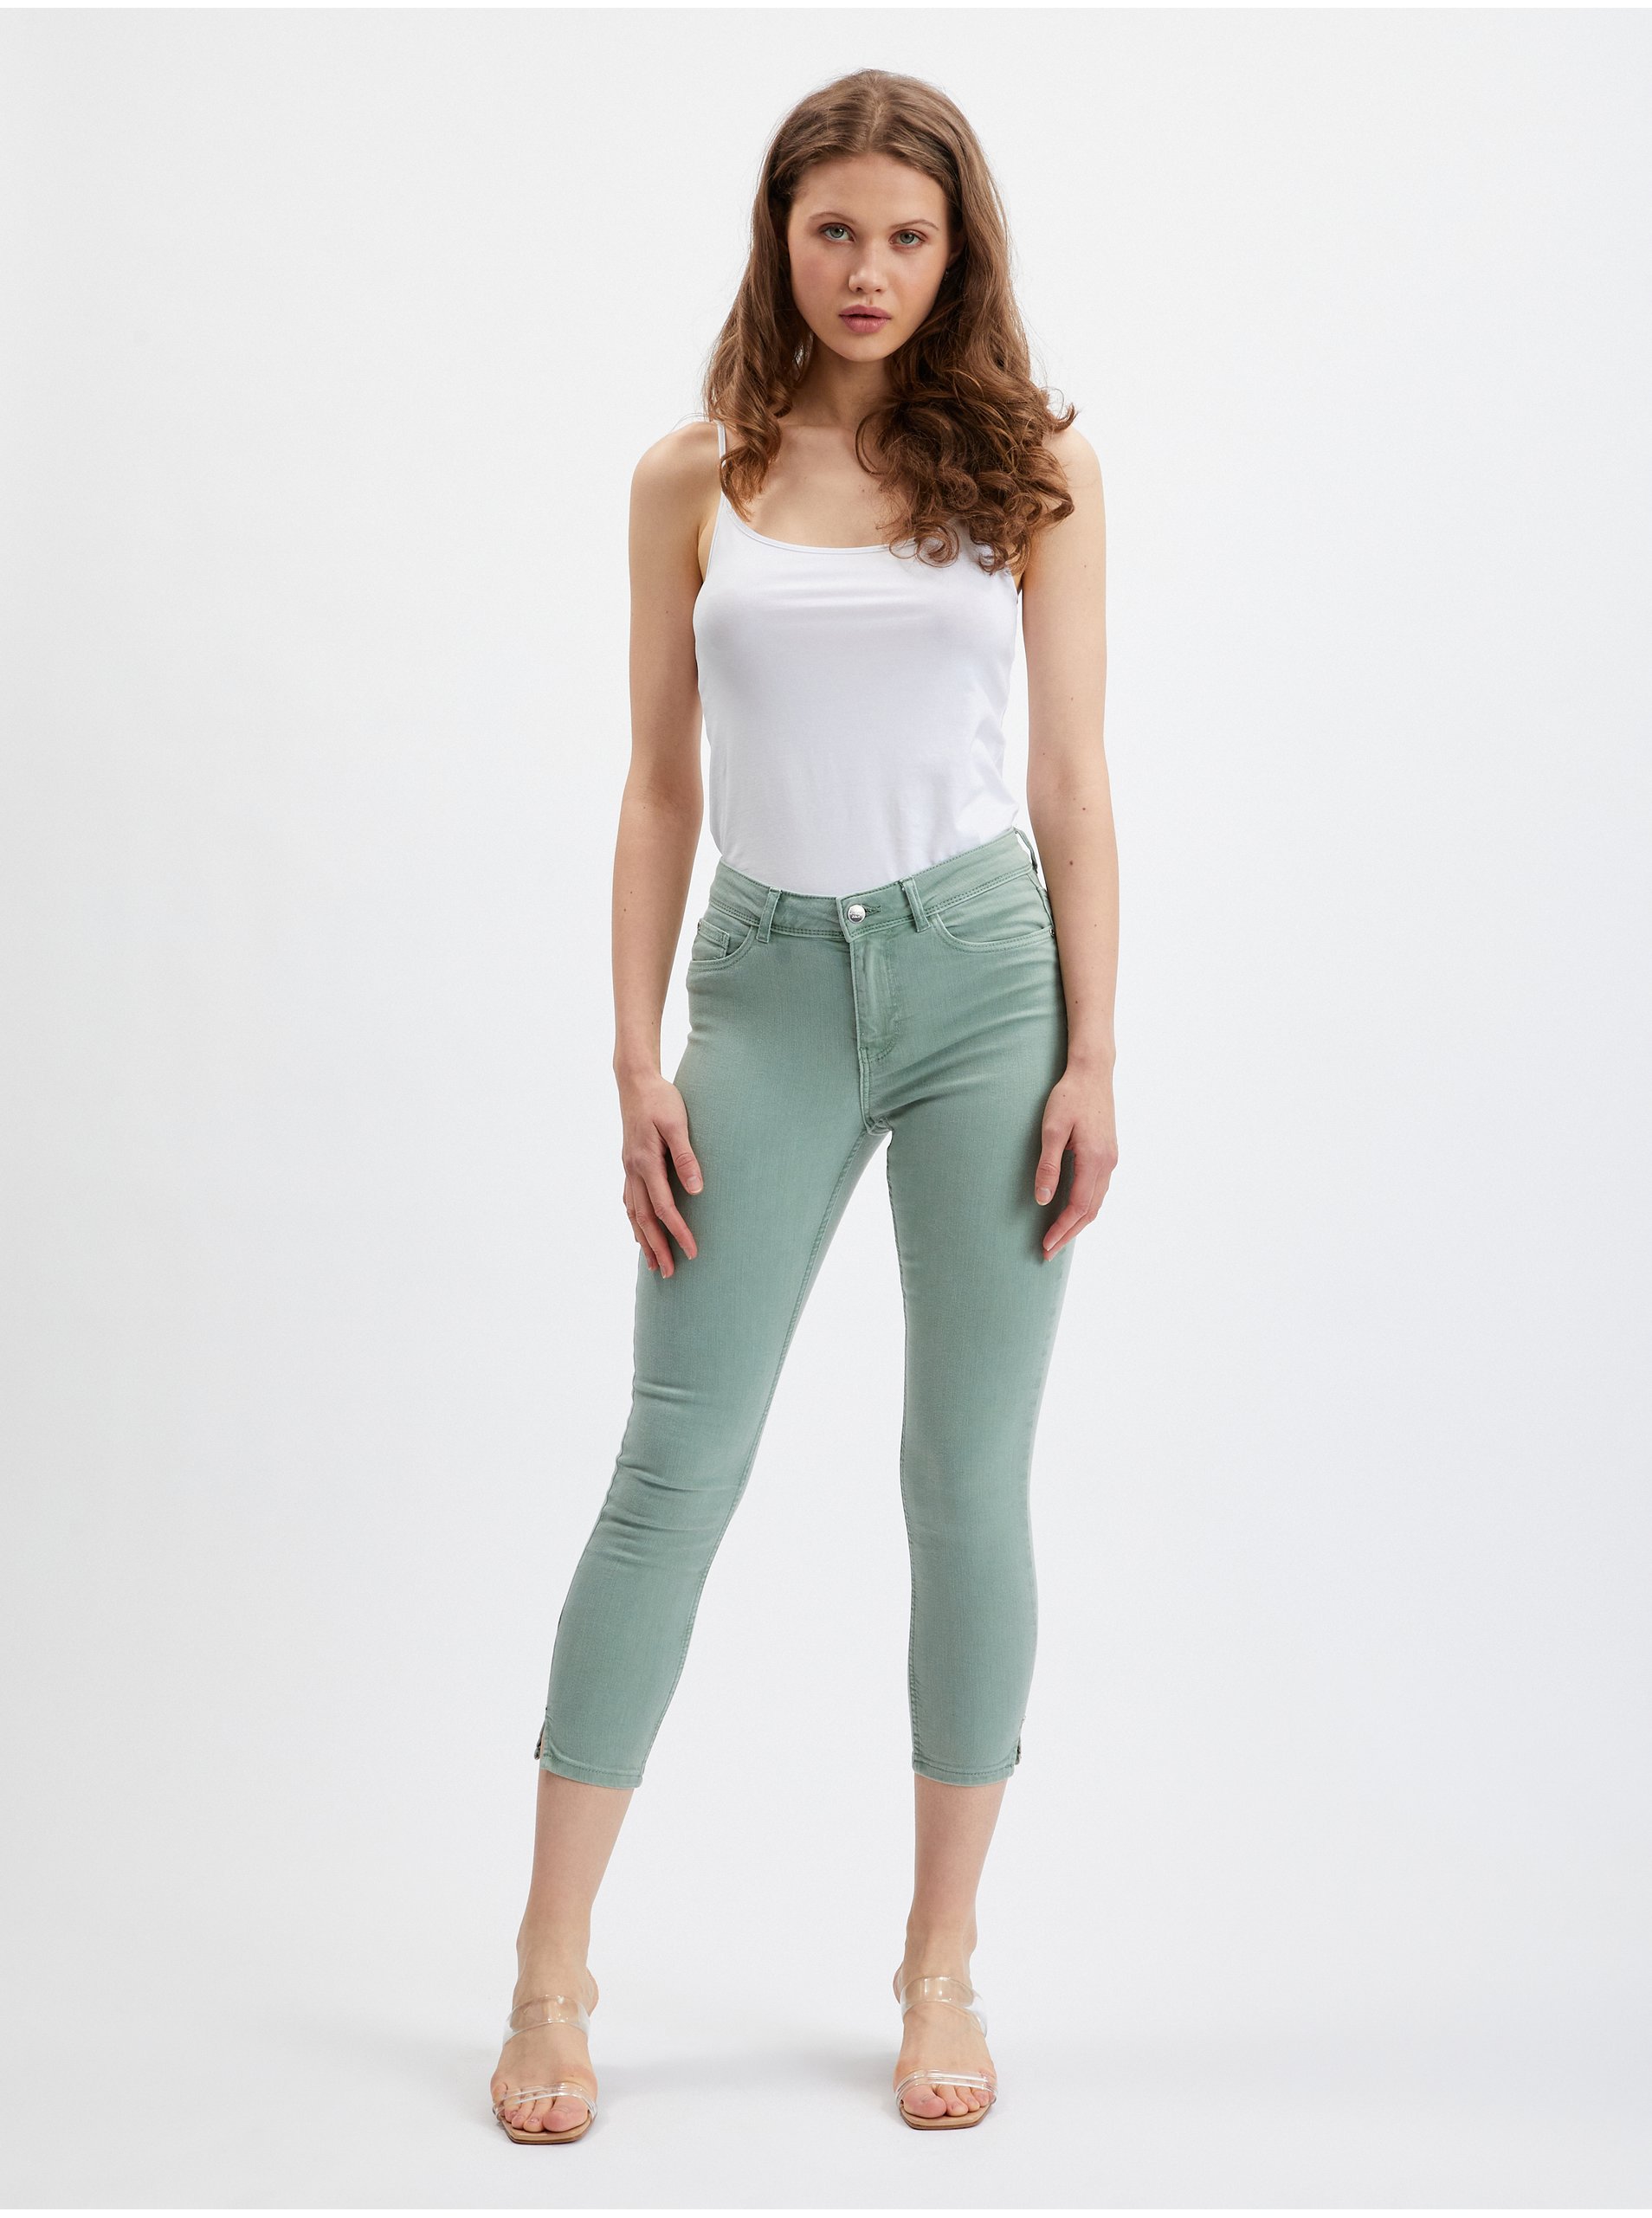 Orsay svetlozelené dámske skinny fit džínsy - ženy